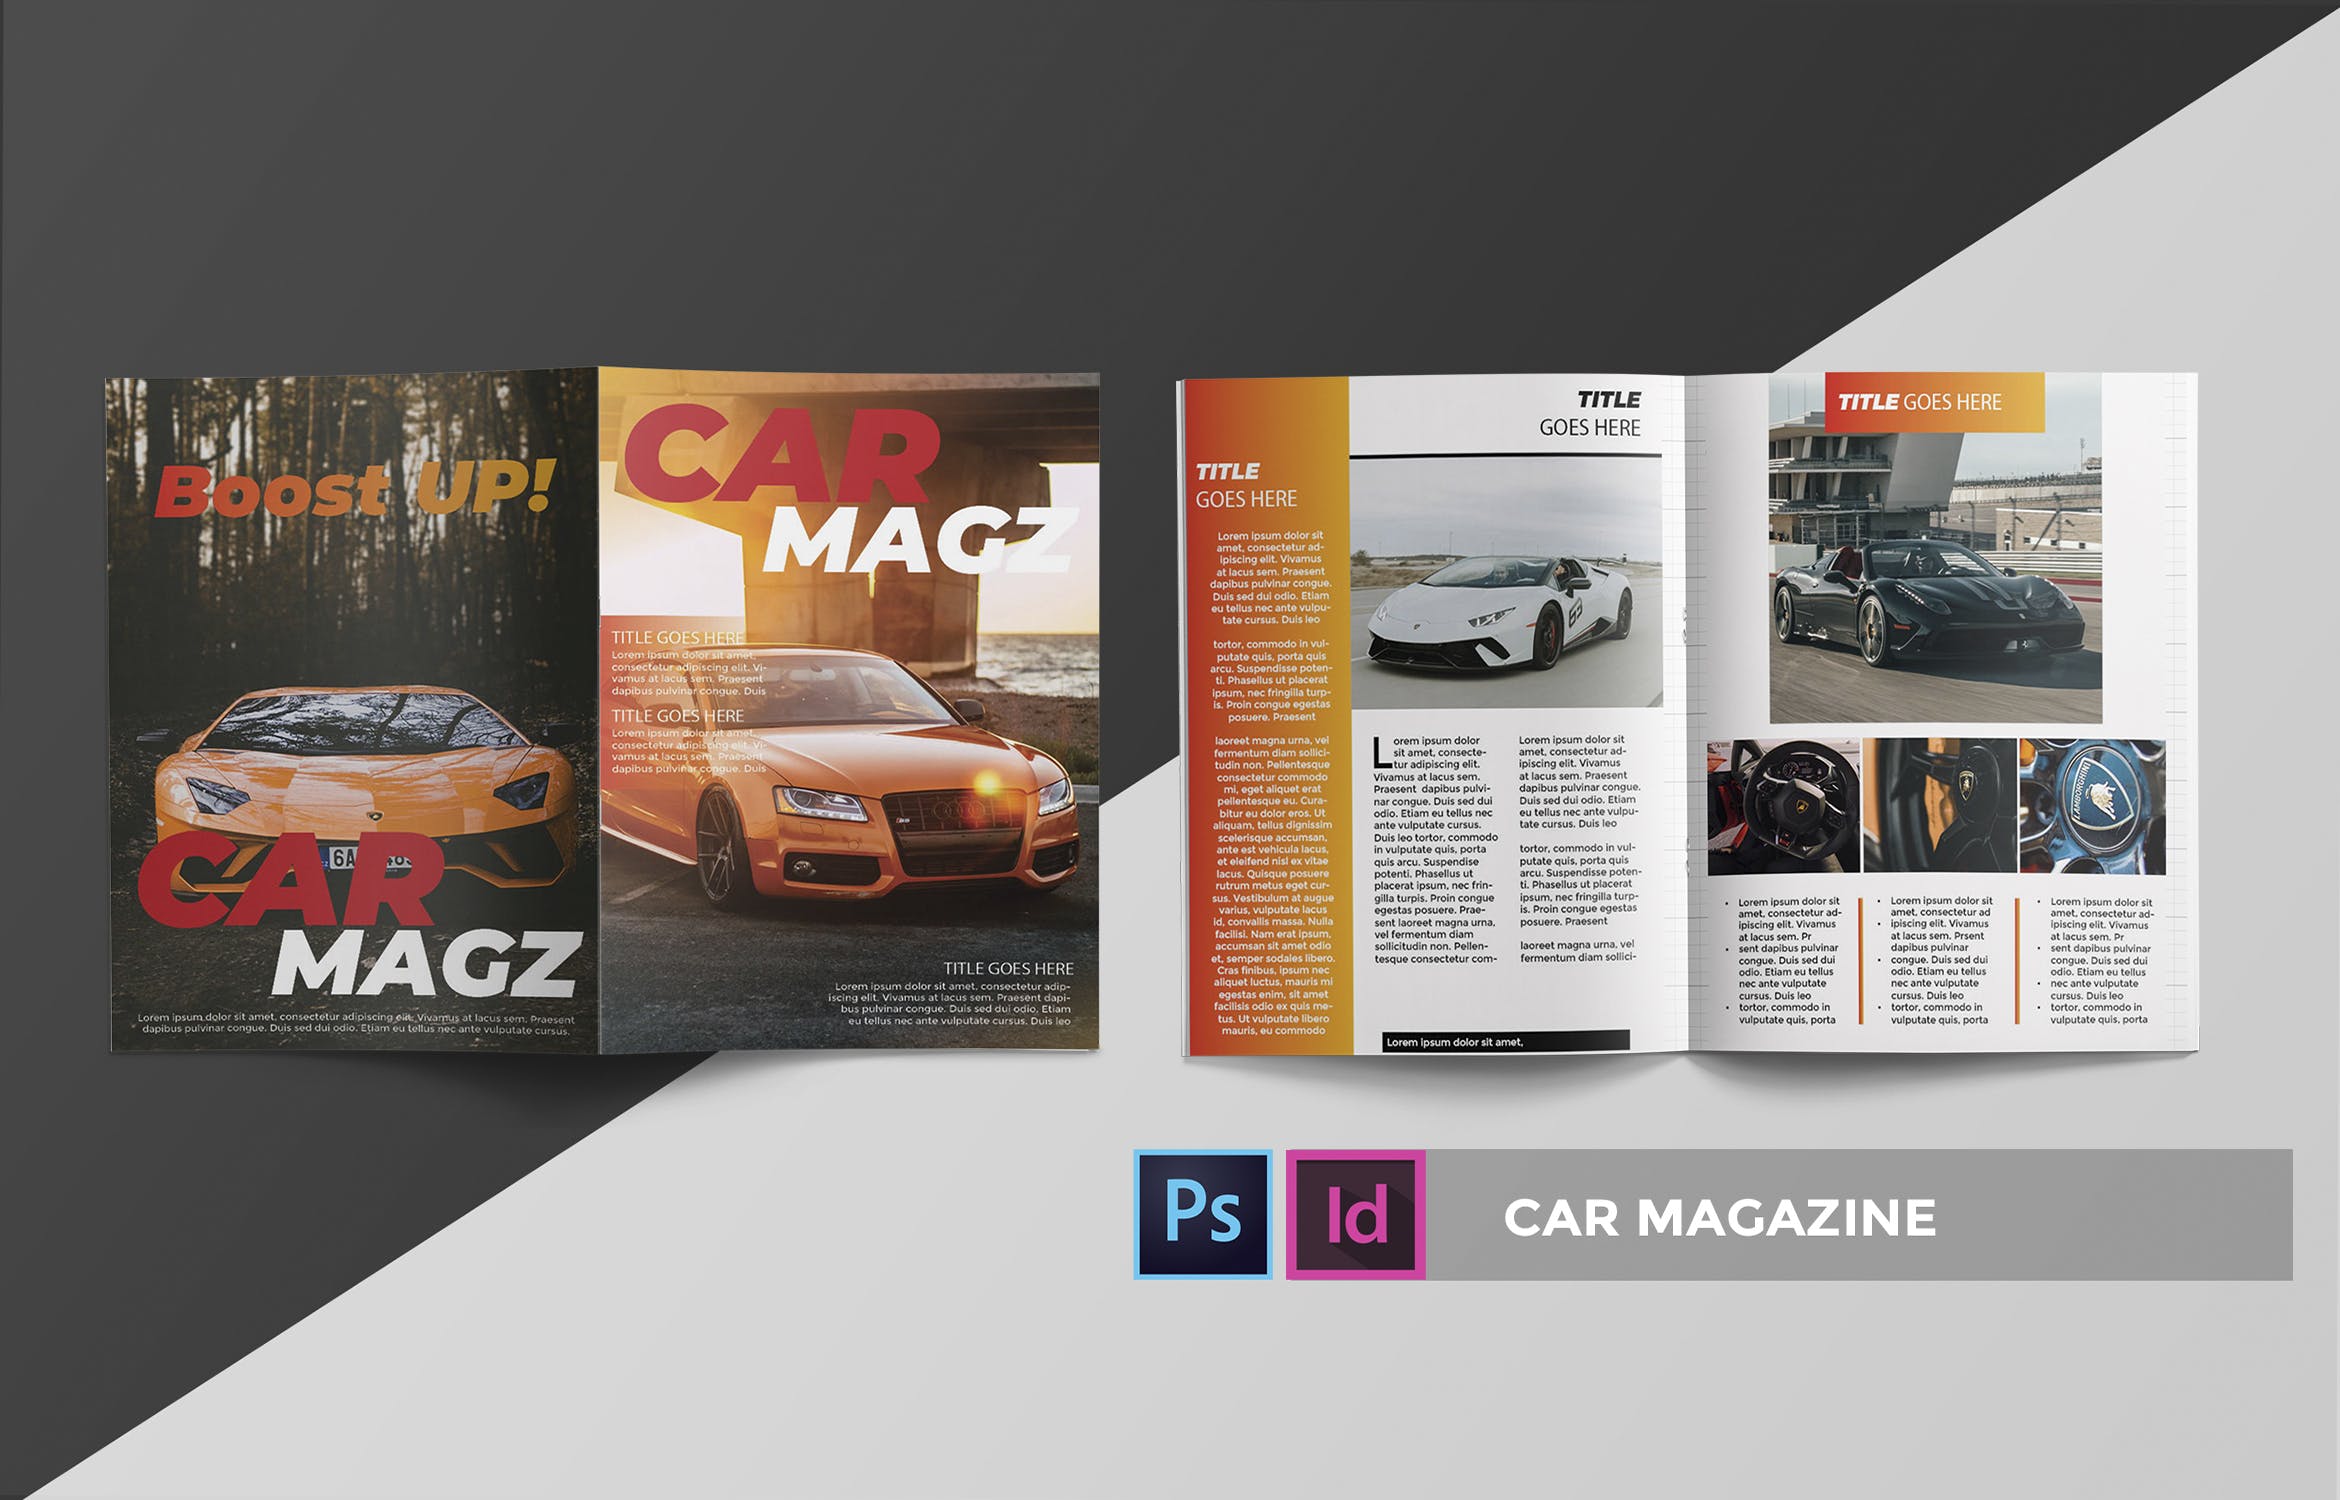 汽车主题素材库精选杂志设计InDesign模板 Car | Magazine Template插图(2)